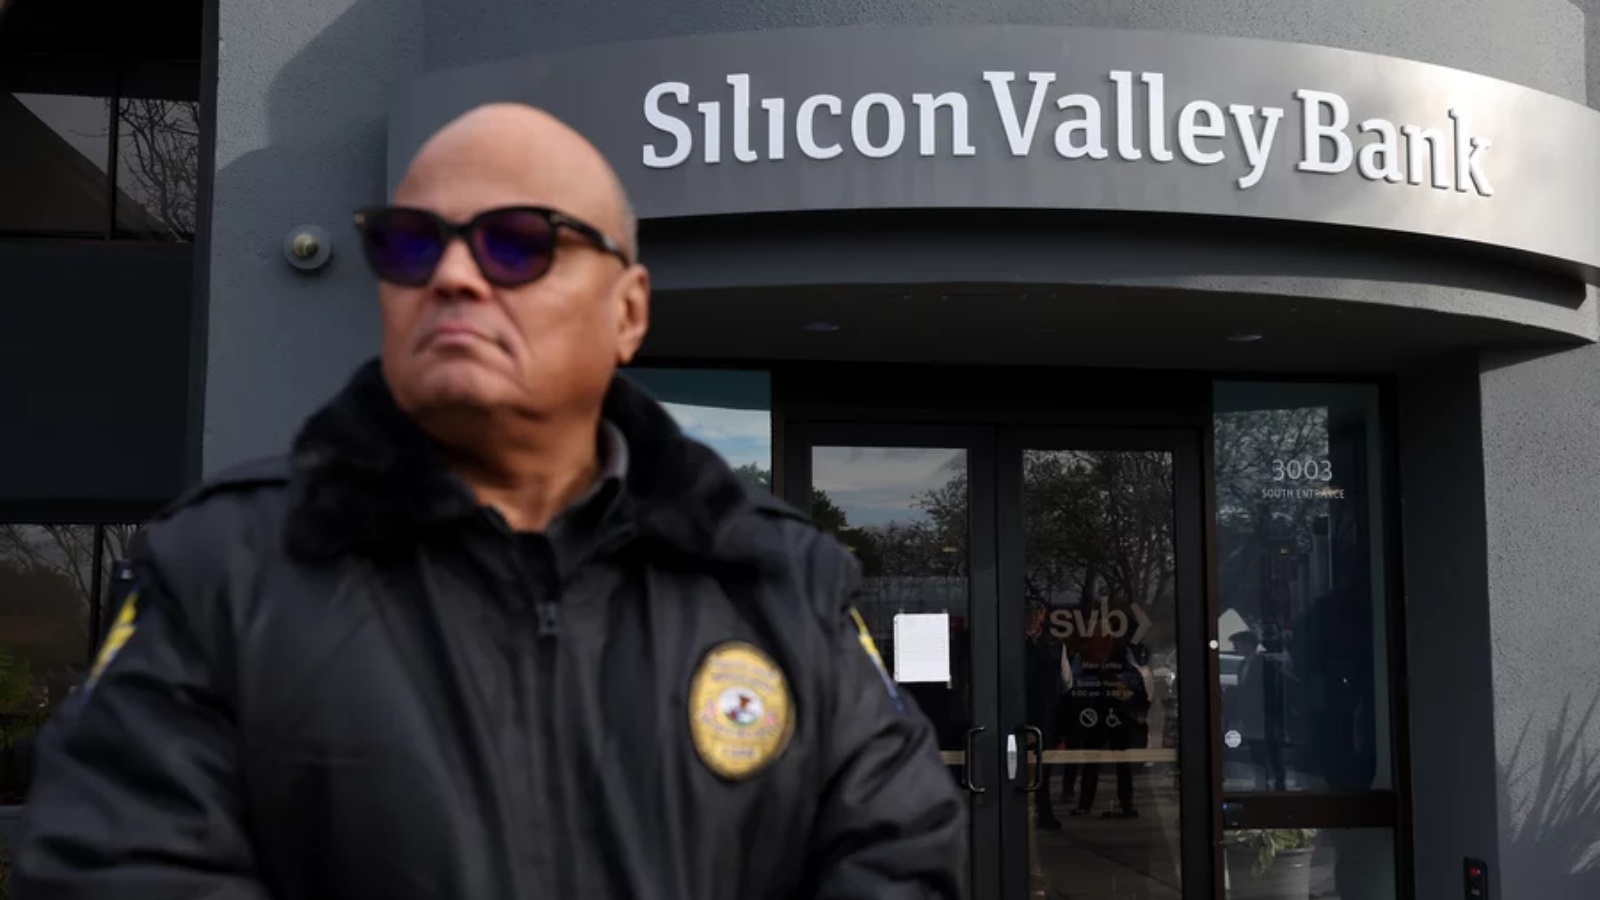 أحد حراس الأمن في سيليكون فالي بنك يراقب مجموعة من الأشخاص خارج المكتب في سانتا كلارا، كاليفورنيا، في 13 مارس 2023.